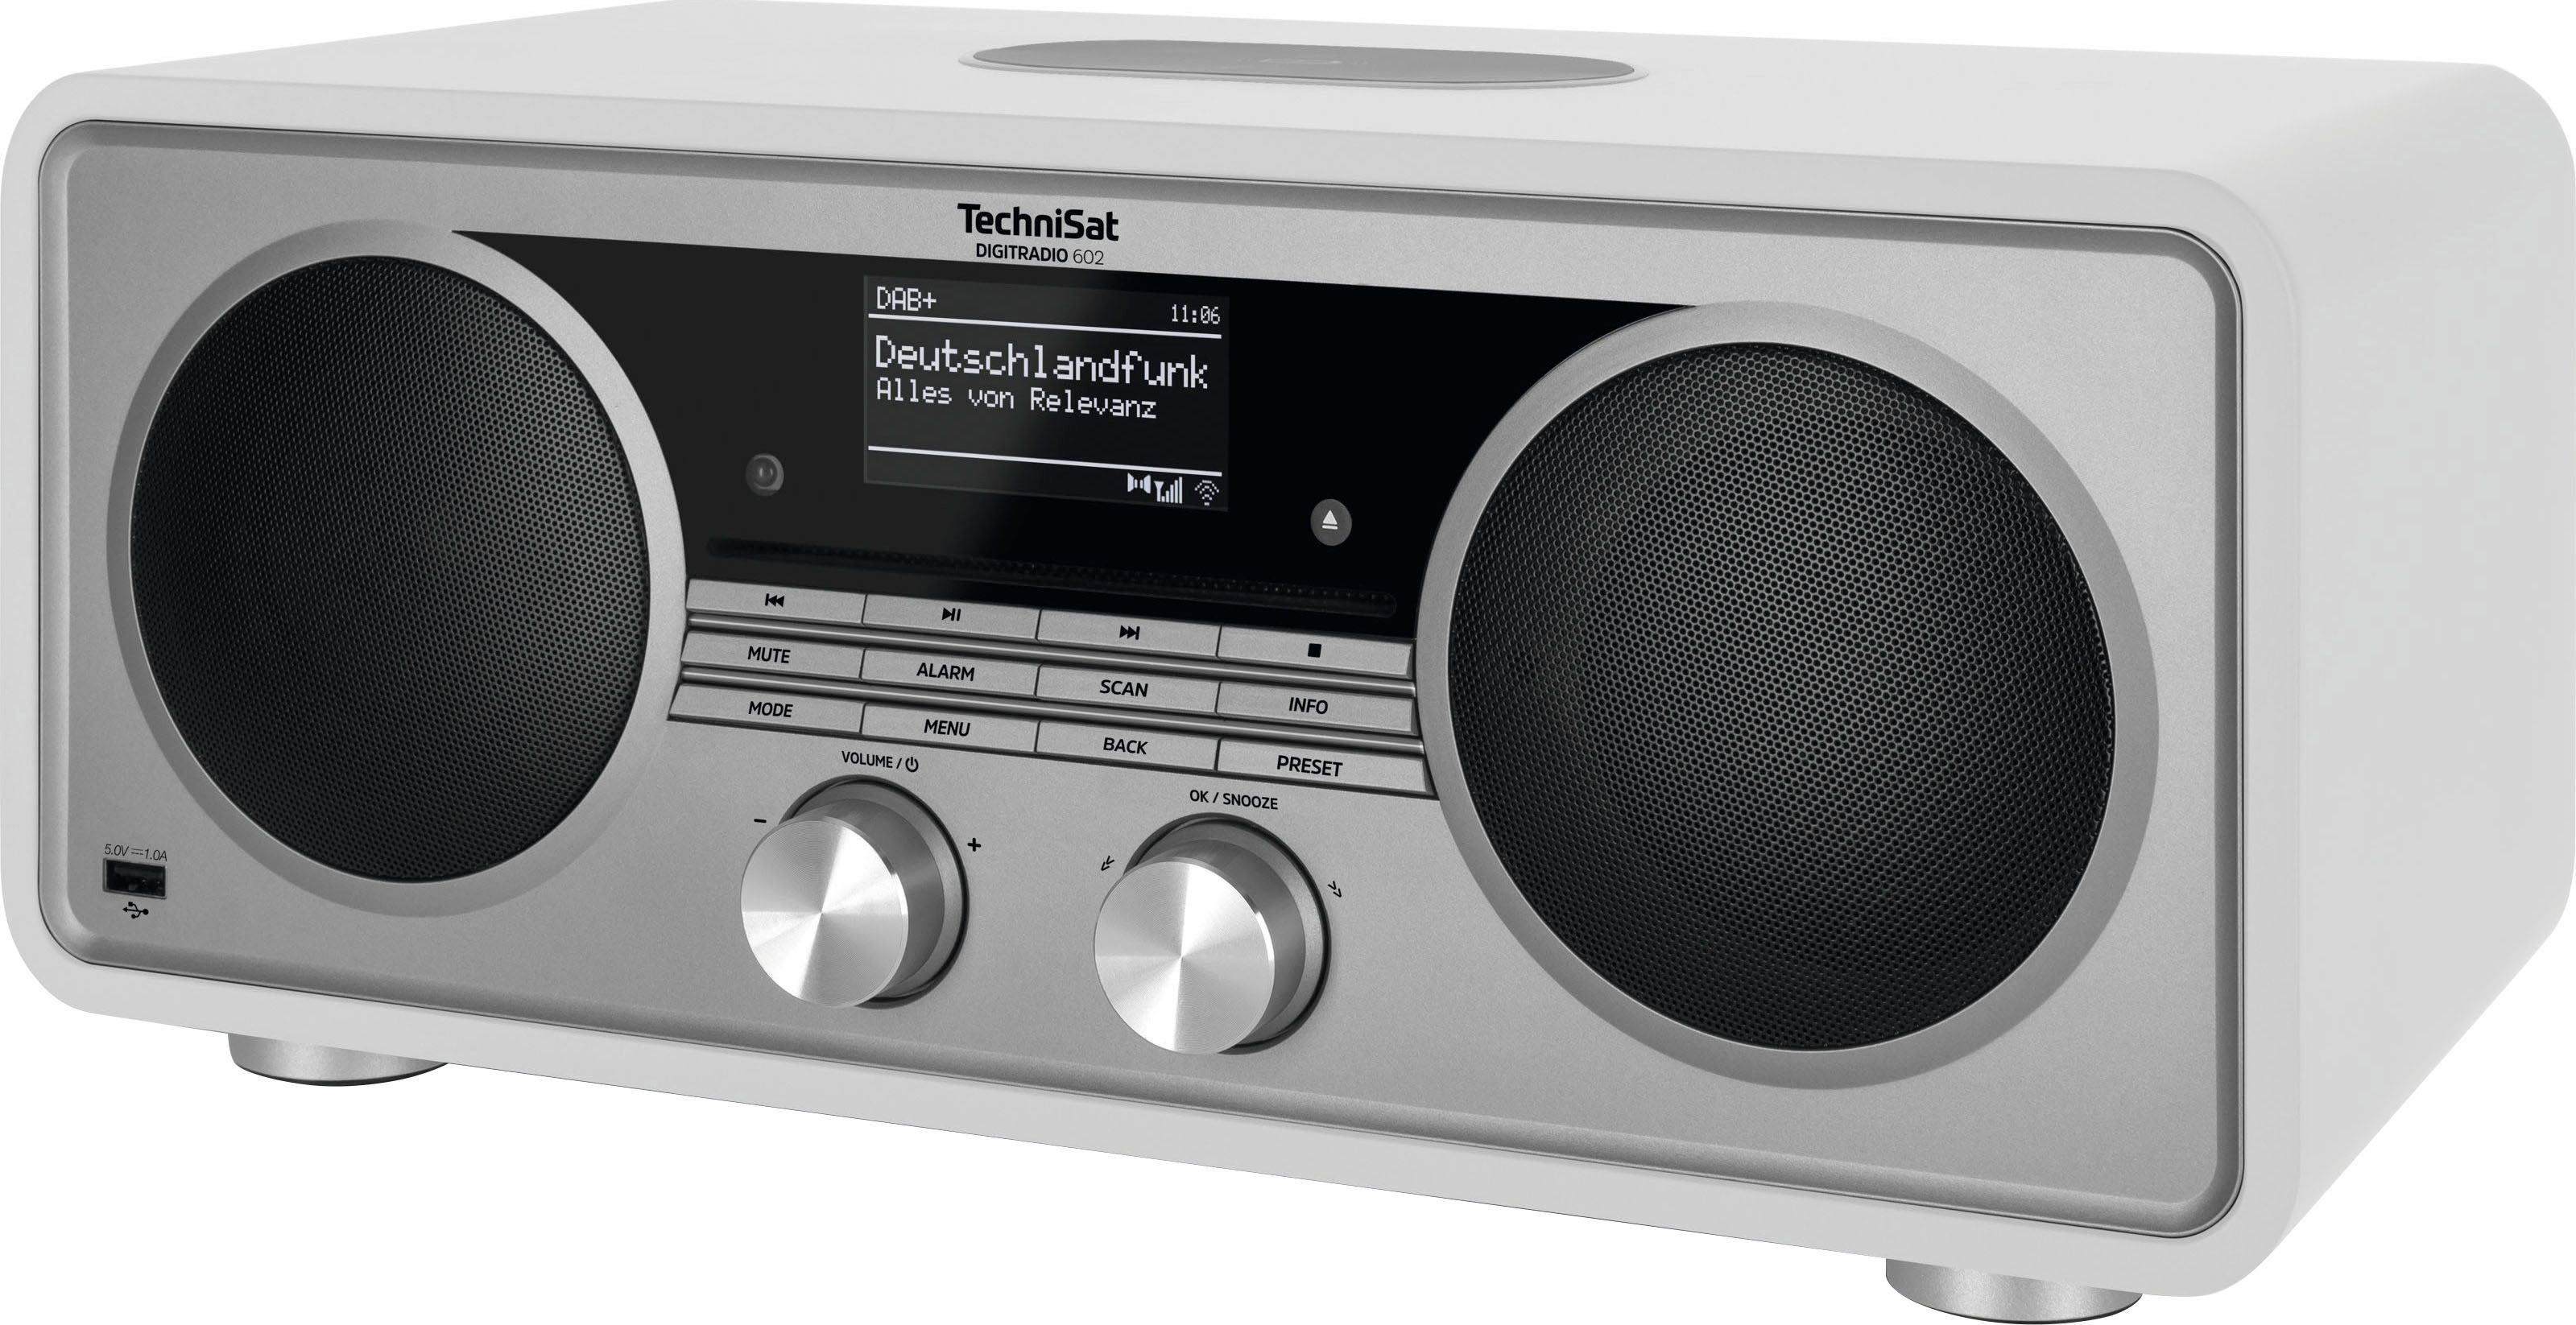 Internet-Radio UKW RDS, W, mit (DAB), CD-Player) Weiß/Silber TechniSat (Digitalradio Stereoanlage, DIGITRADIO 602 70